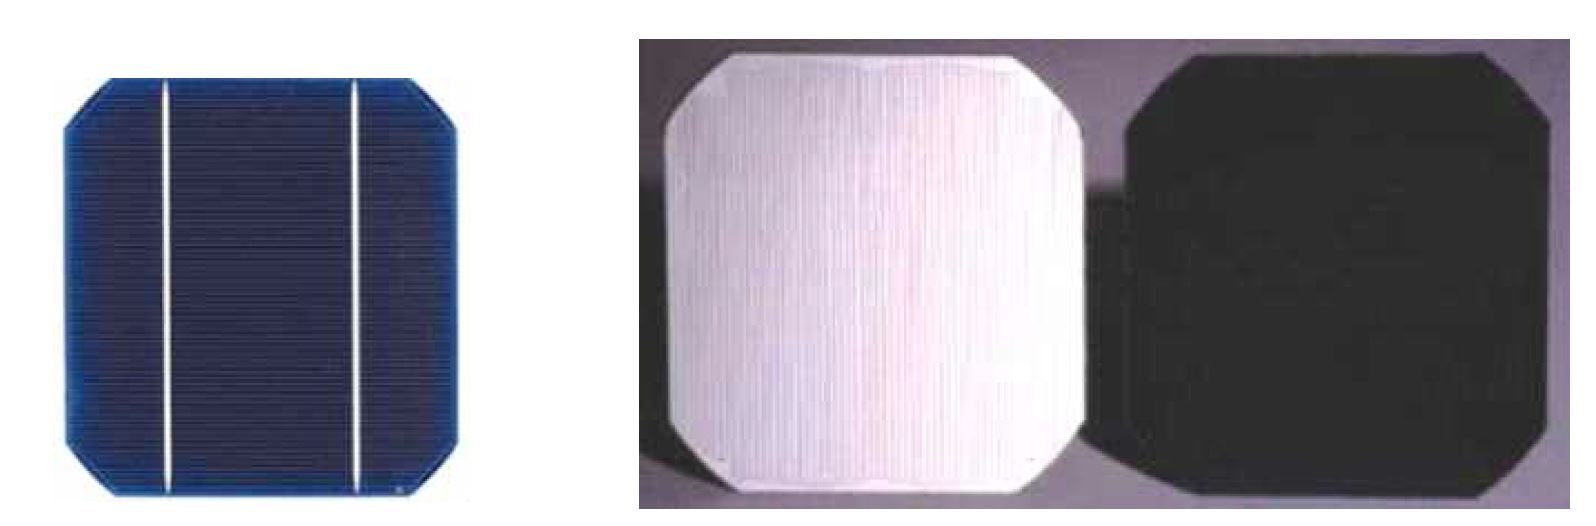 그림 3-3-2 일반적인 태양전지(좌), C60 태양전지 (우)